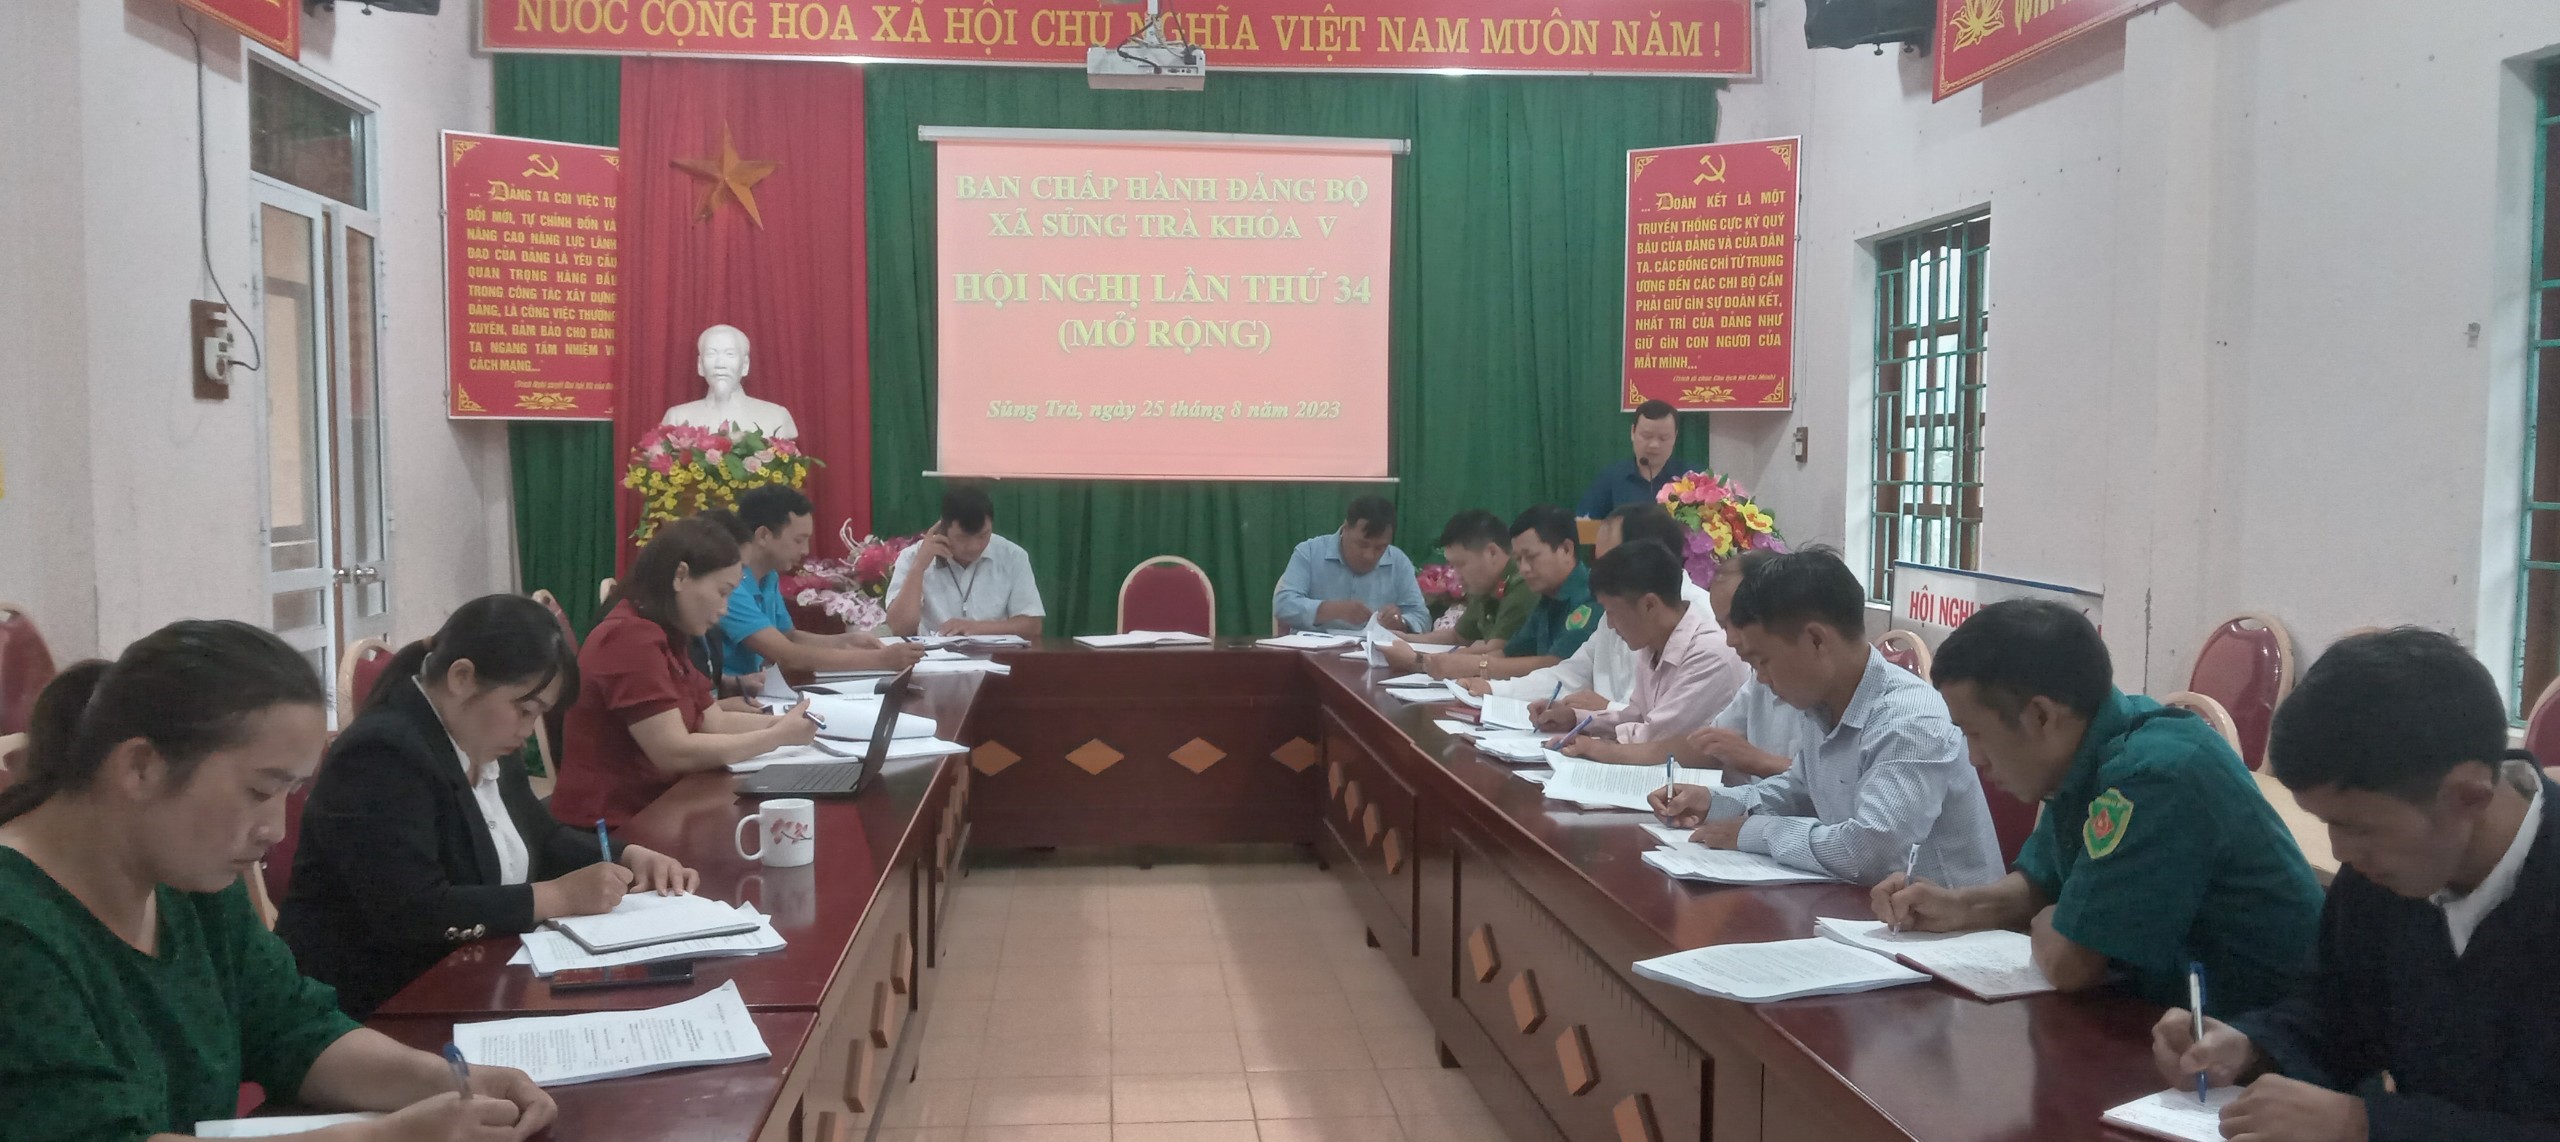 Đảng bộ xã Sủng Trà tổ chức Hội nghị Ban chấp hành lần thứ 34 (khóa V), nhiệm kỳ 2020-2025